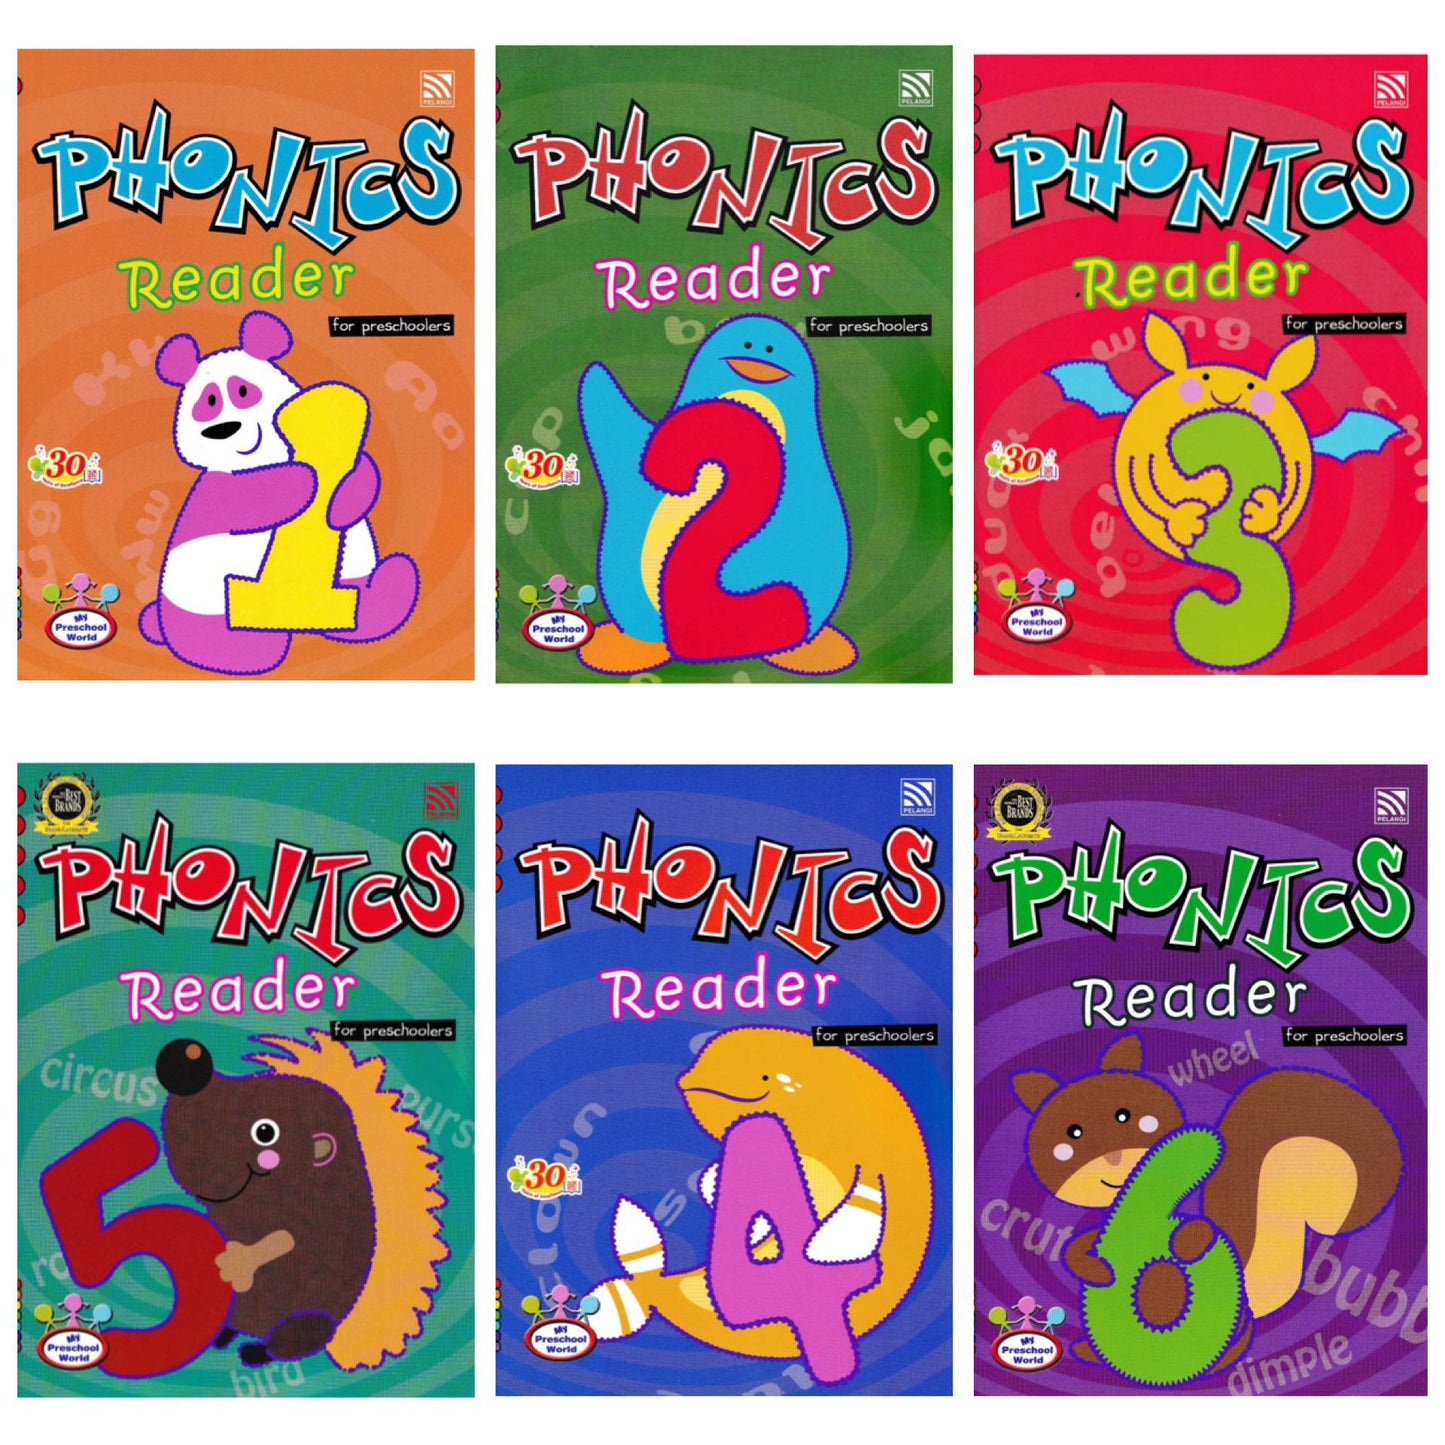 Phonics Reader 1 to 6 for Preschoolers